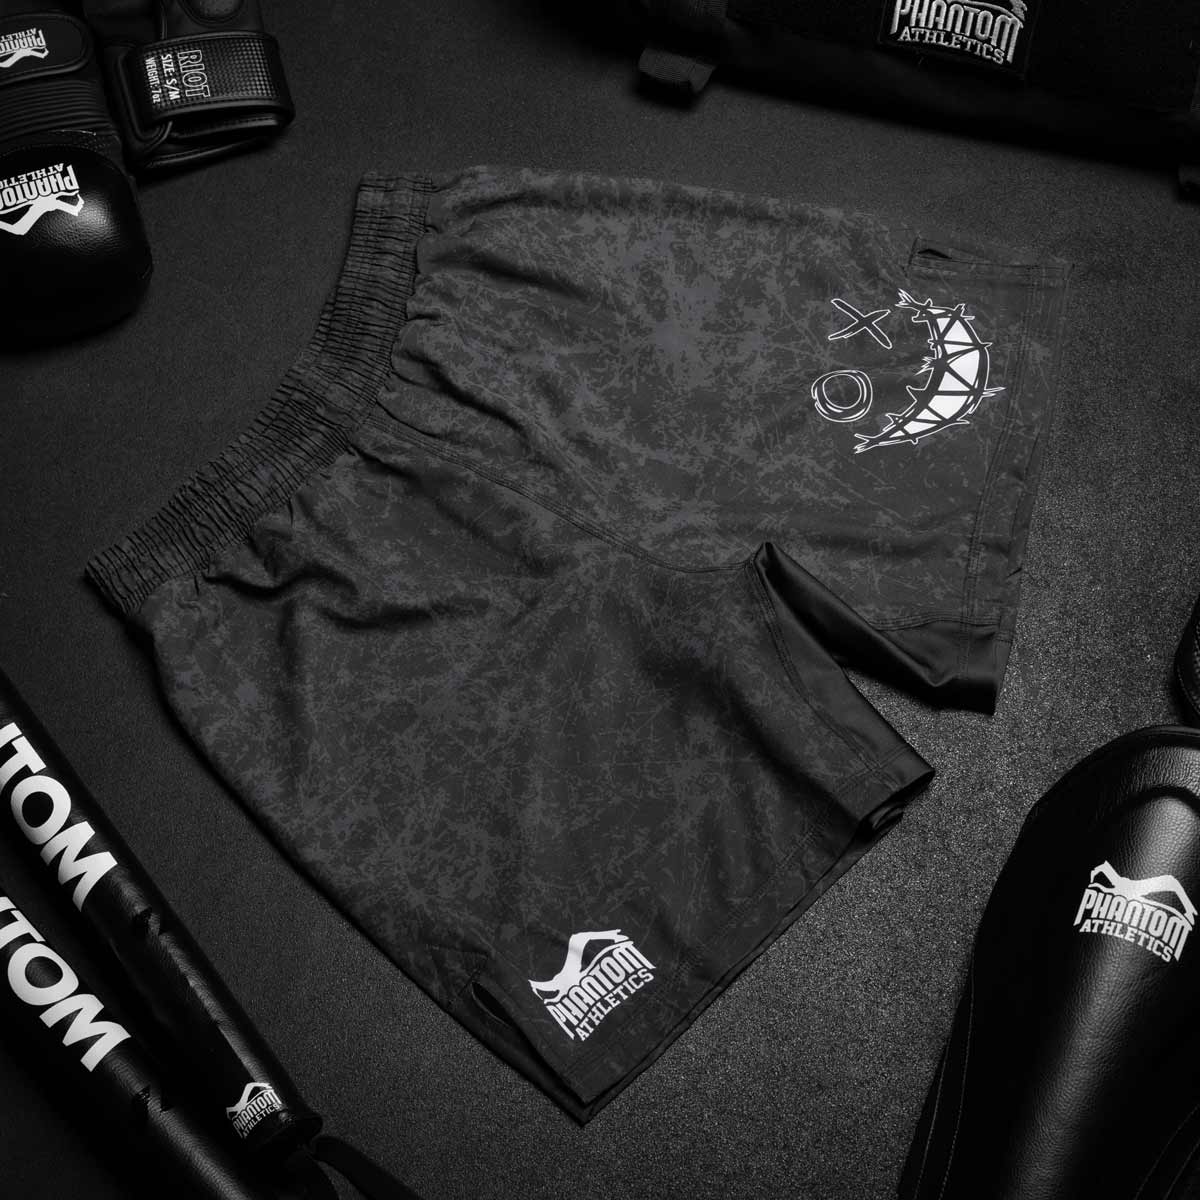 Die Phantom Serious MMA Shorts im Smiley Design für deinen Kampfsport.  Super elastische Kampfsporthose aus reißfestem Material. Perfekt für Training und Wettkampf.